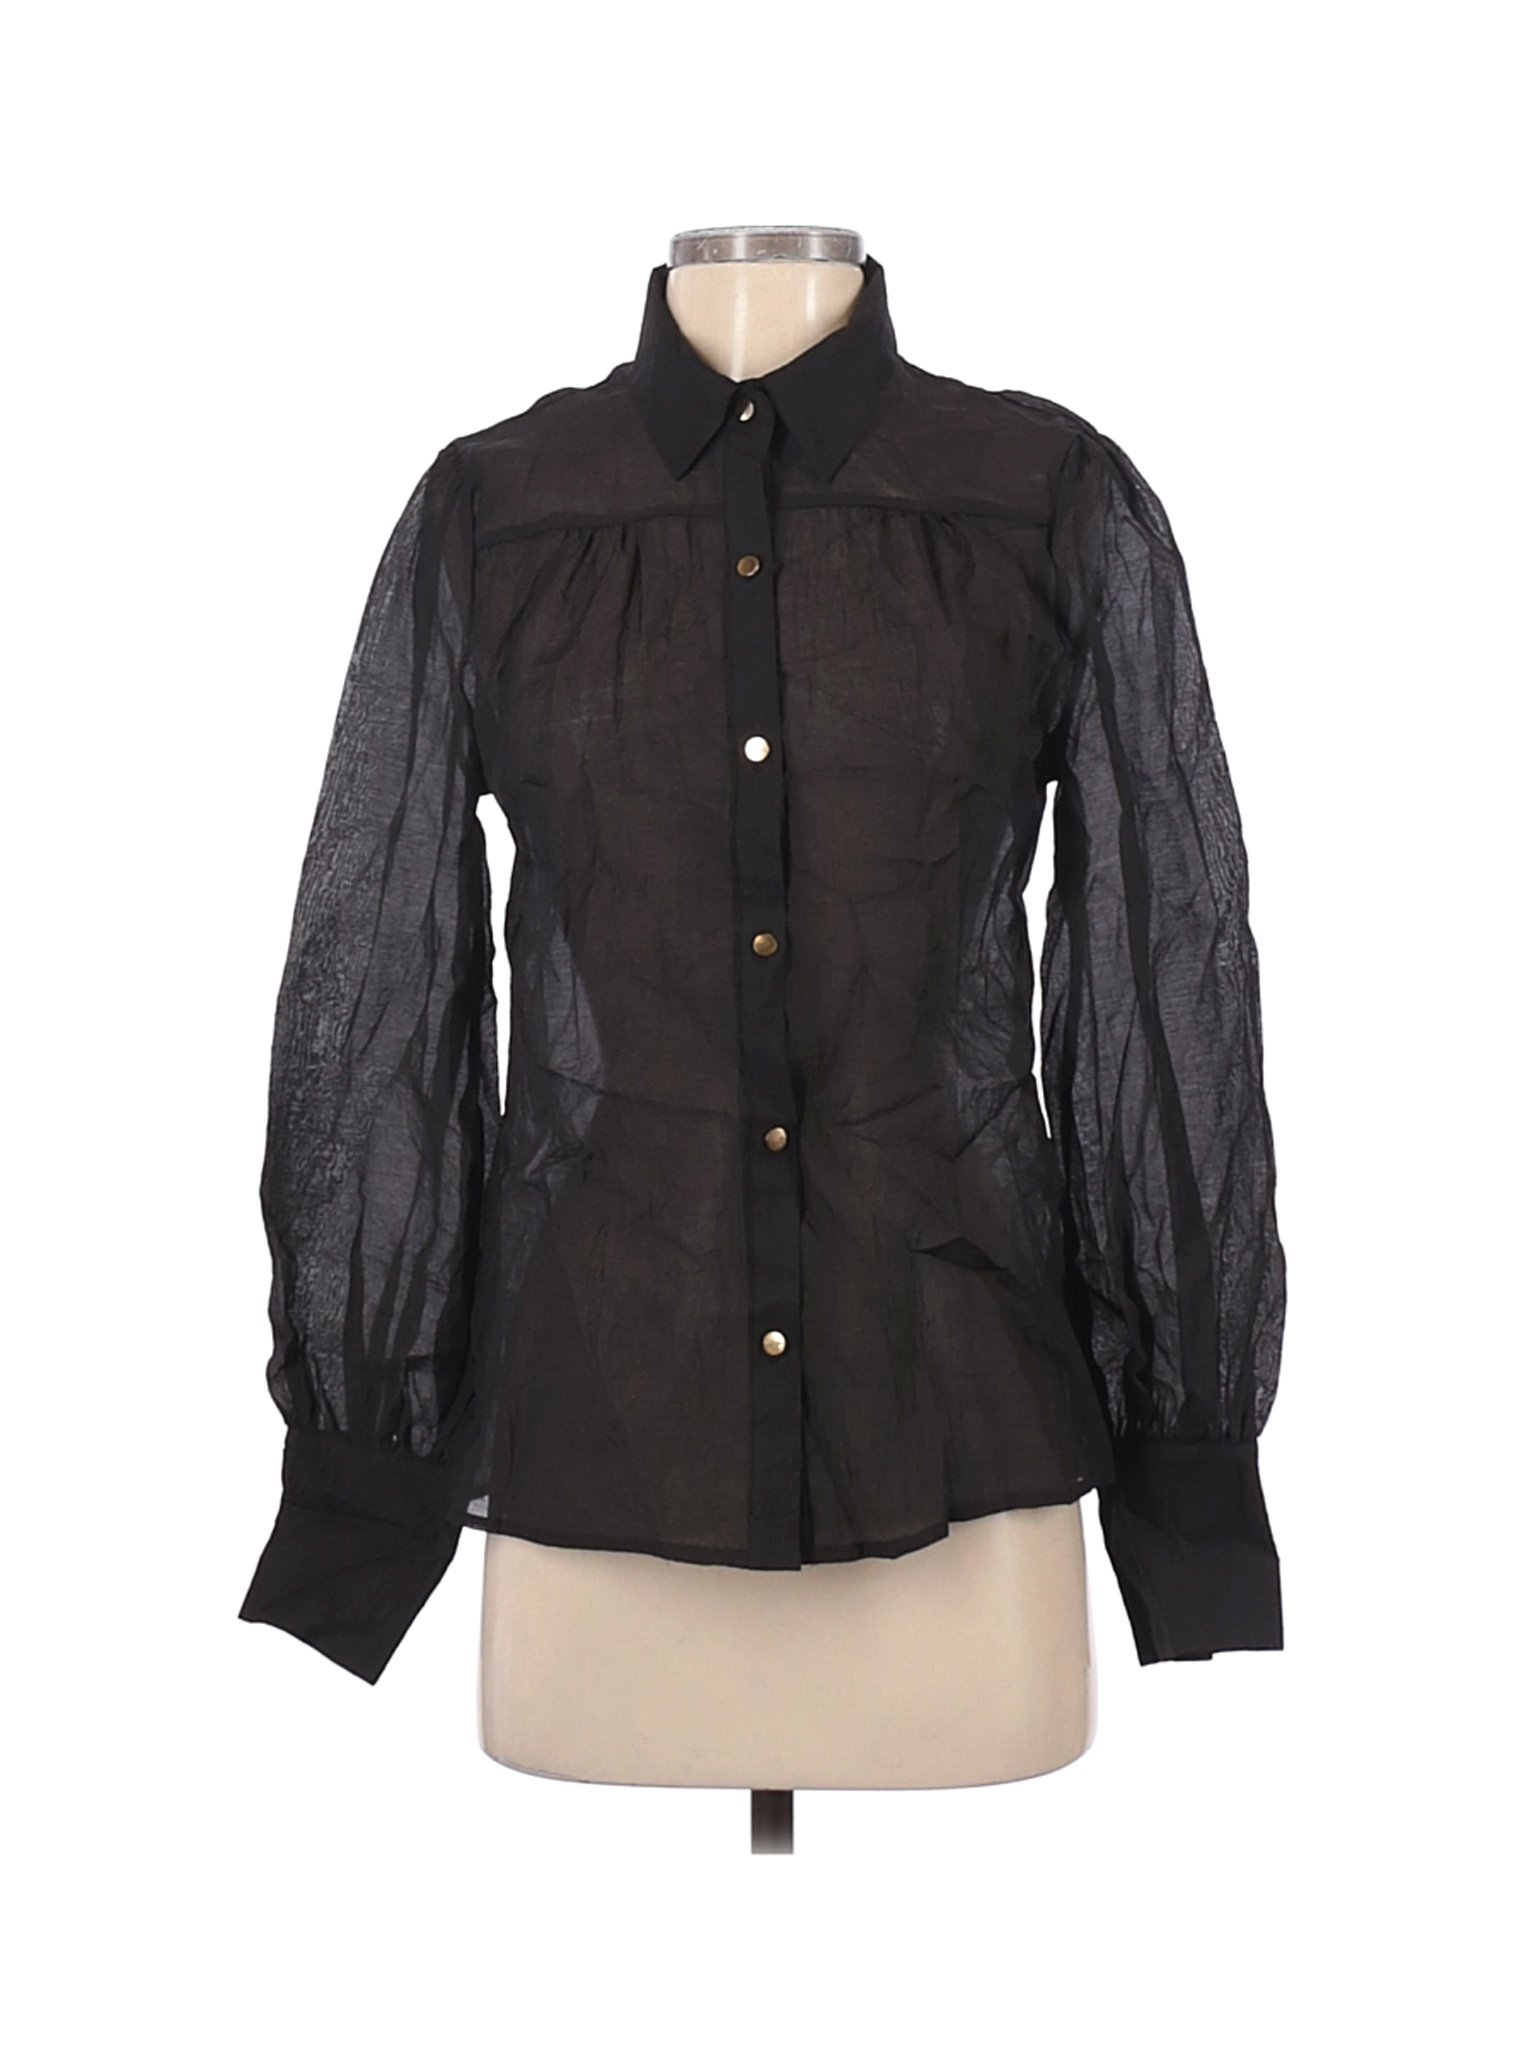 CBR Women Black Long Sleeve Blouse S | eBay